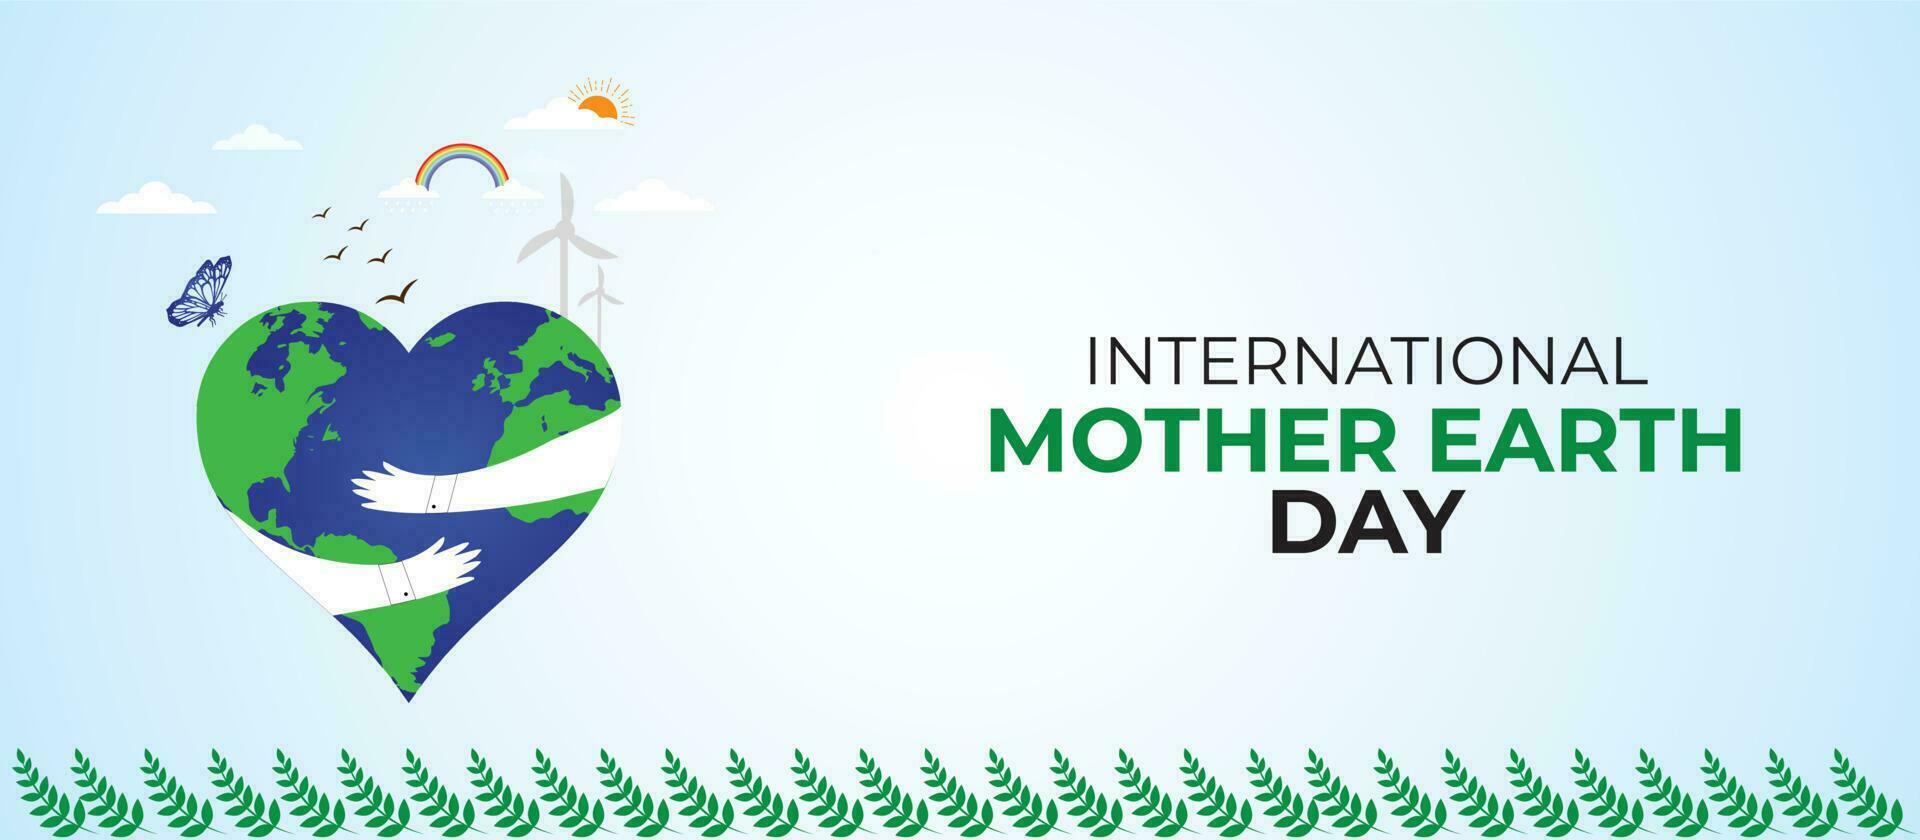 Internationale moeder aarde dag. sjabloon voor achtergrond, banier, kaart, poster vector illustratie.